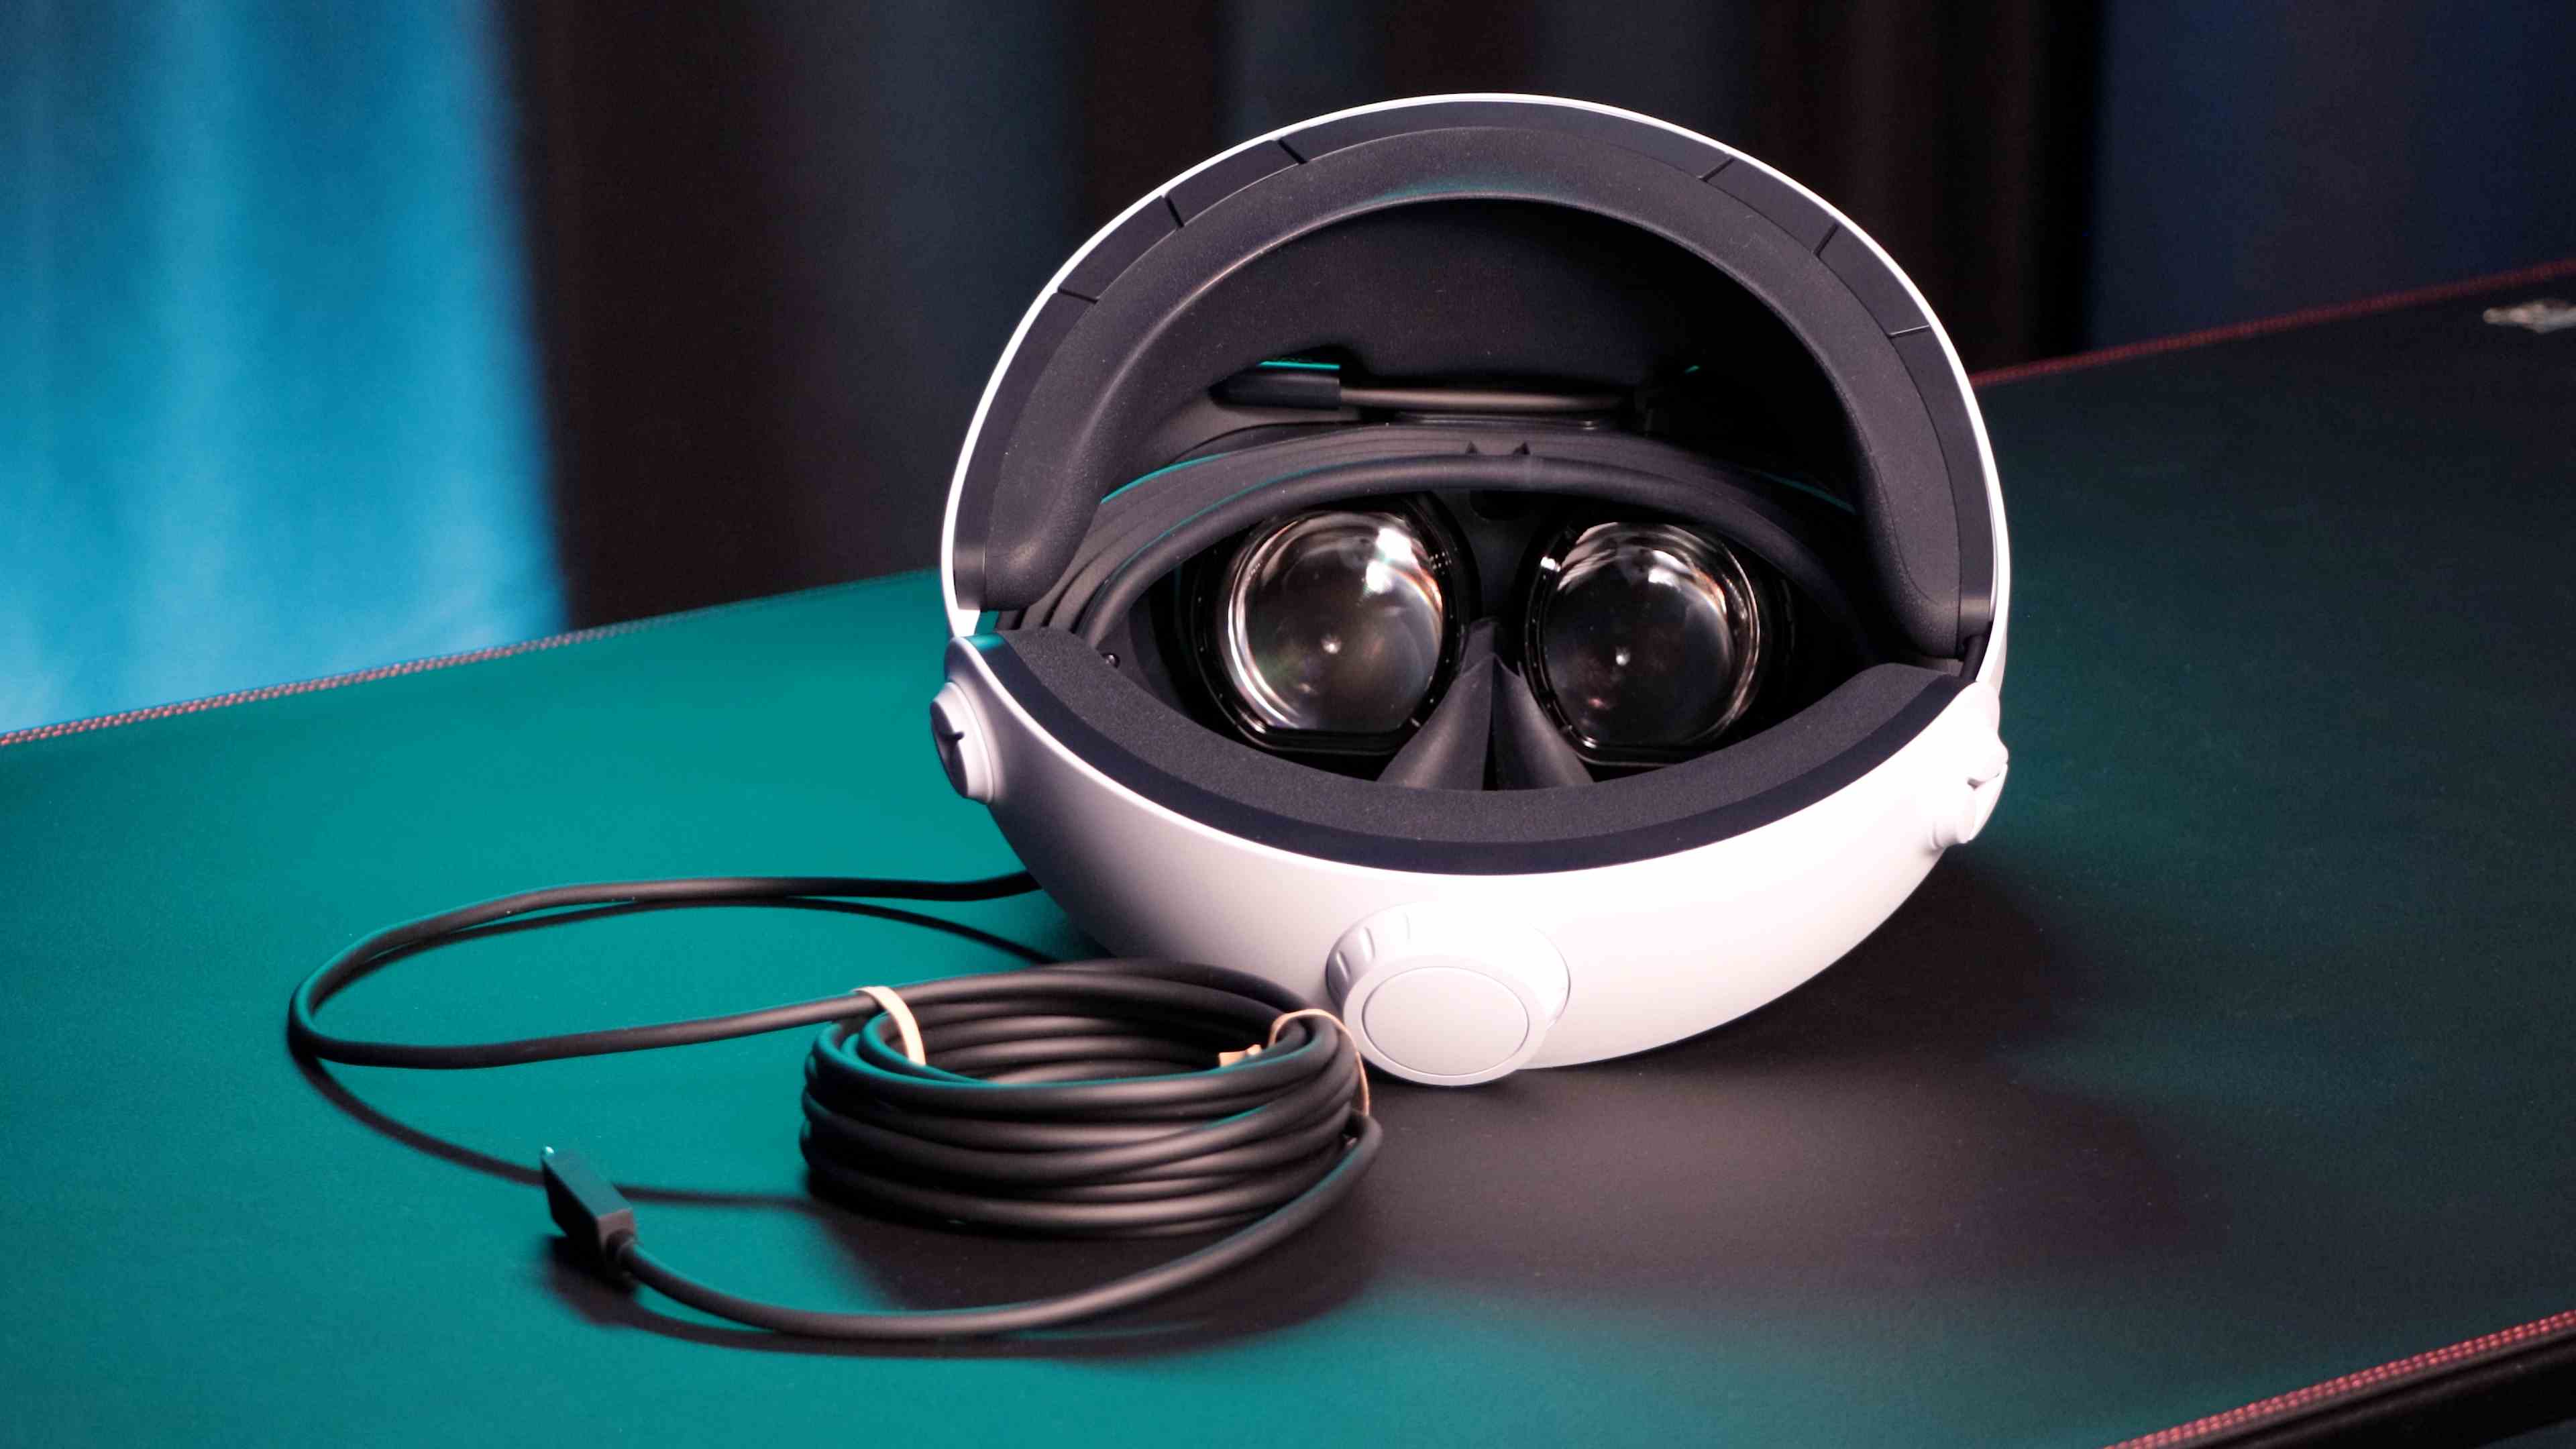 Examen du PSVR 2 Image montrant le casque posé sur une table, vous permettant de voir les lentilles et le câble USB-C